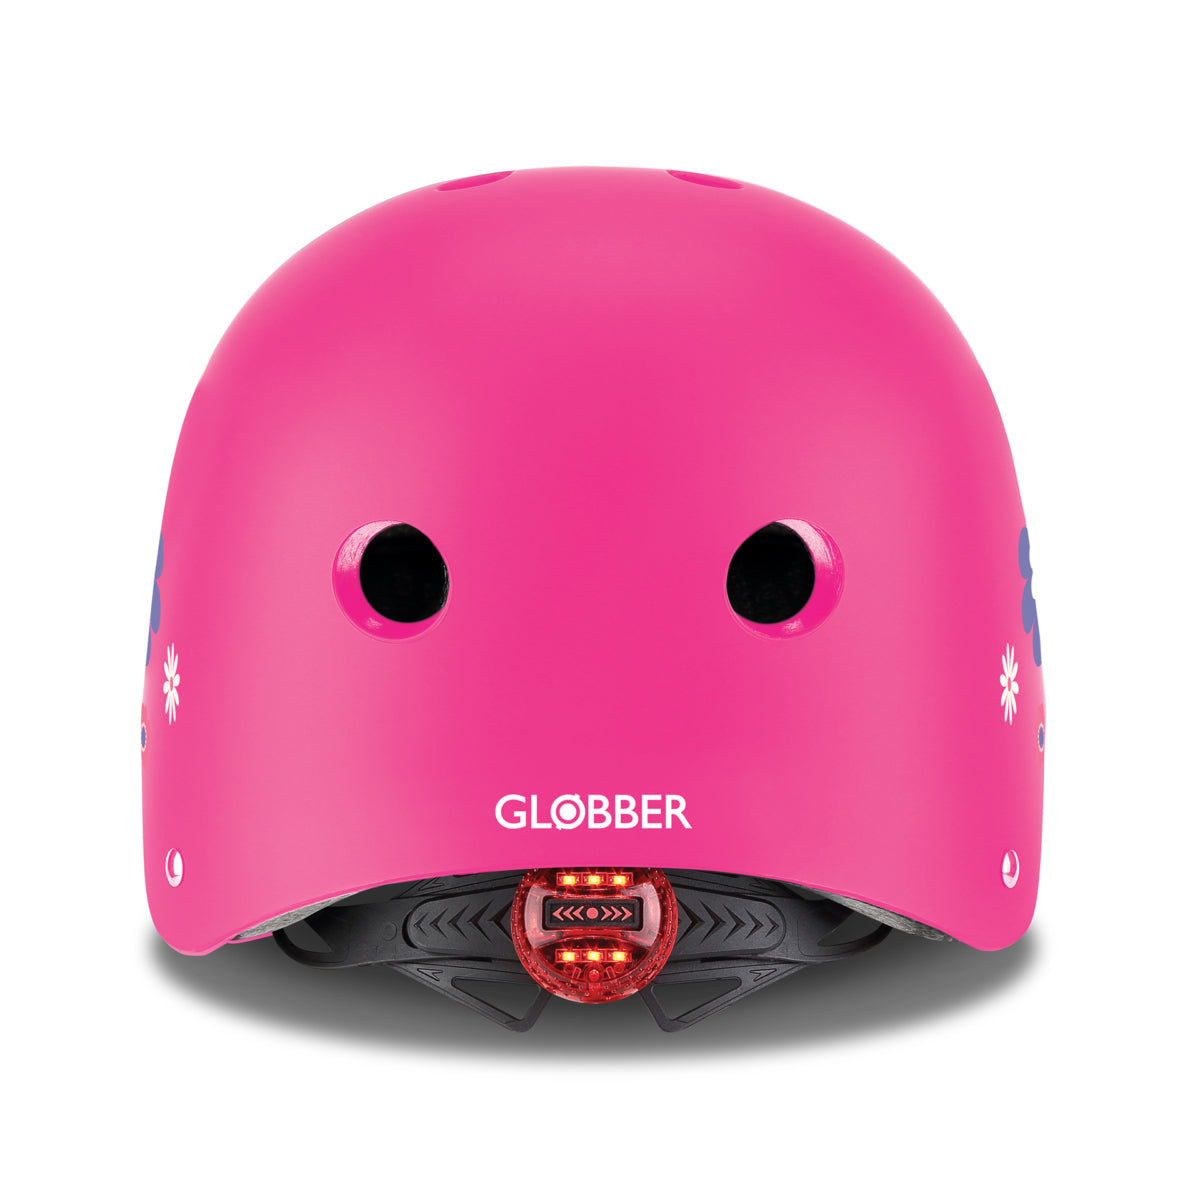 Globber KIDS HELMET FANTASY XS/S 48-53 cm 兒童防護頭盔